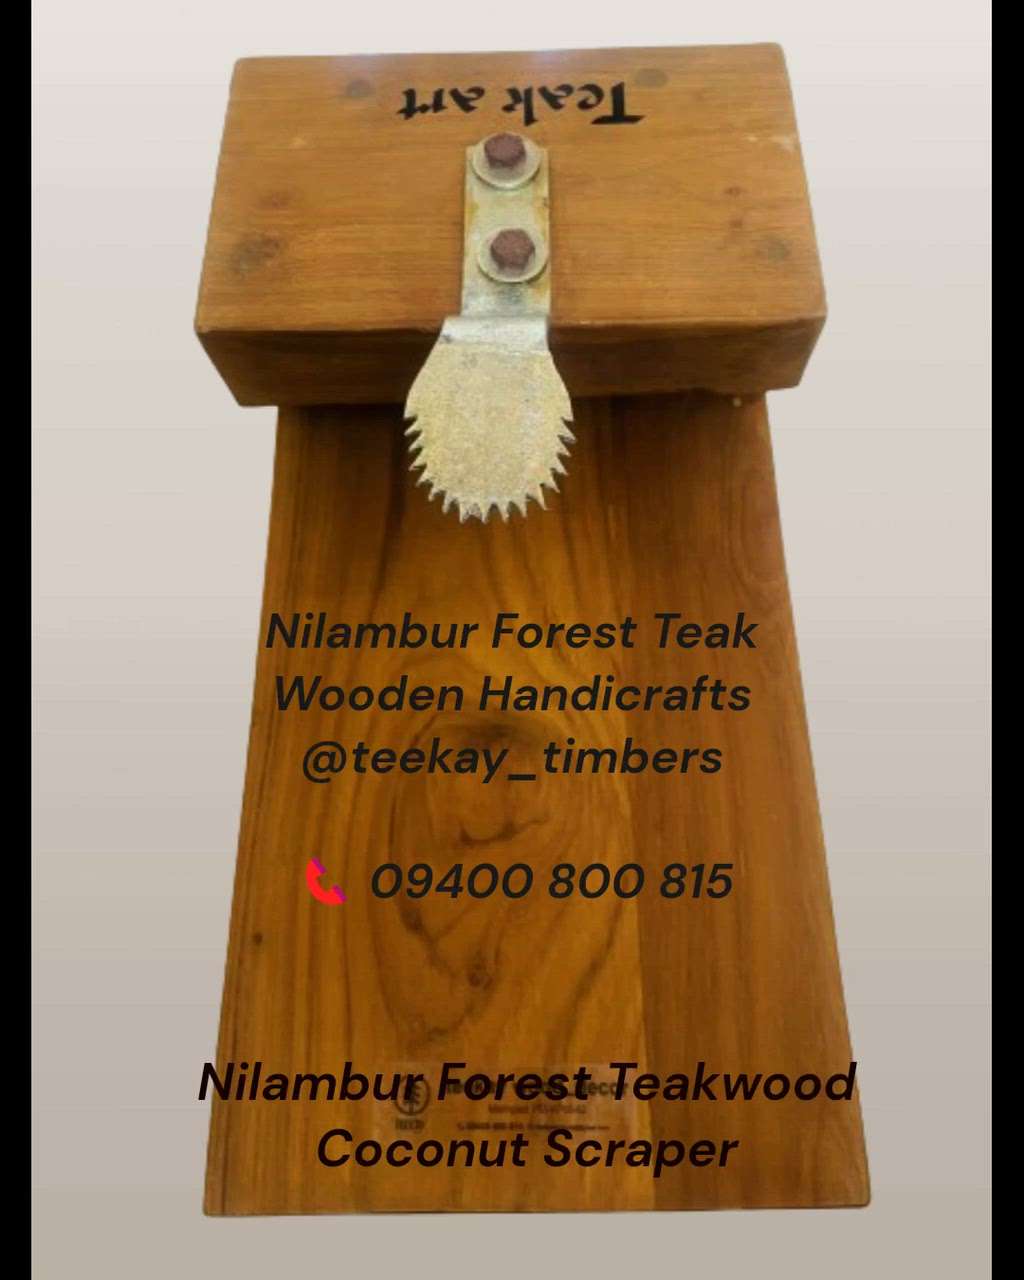 Nilambur Forest Teak Wooden Handicrafts @teekay_timbers  #handicrafts
#nilamburteakhandicrafts
#teekaywooddecor

📞 09400 800 815

📧 teekaytimbers@gmail.com

🌎 https://www.teekaytimbers.com/